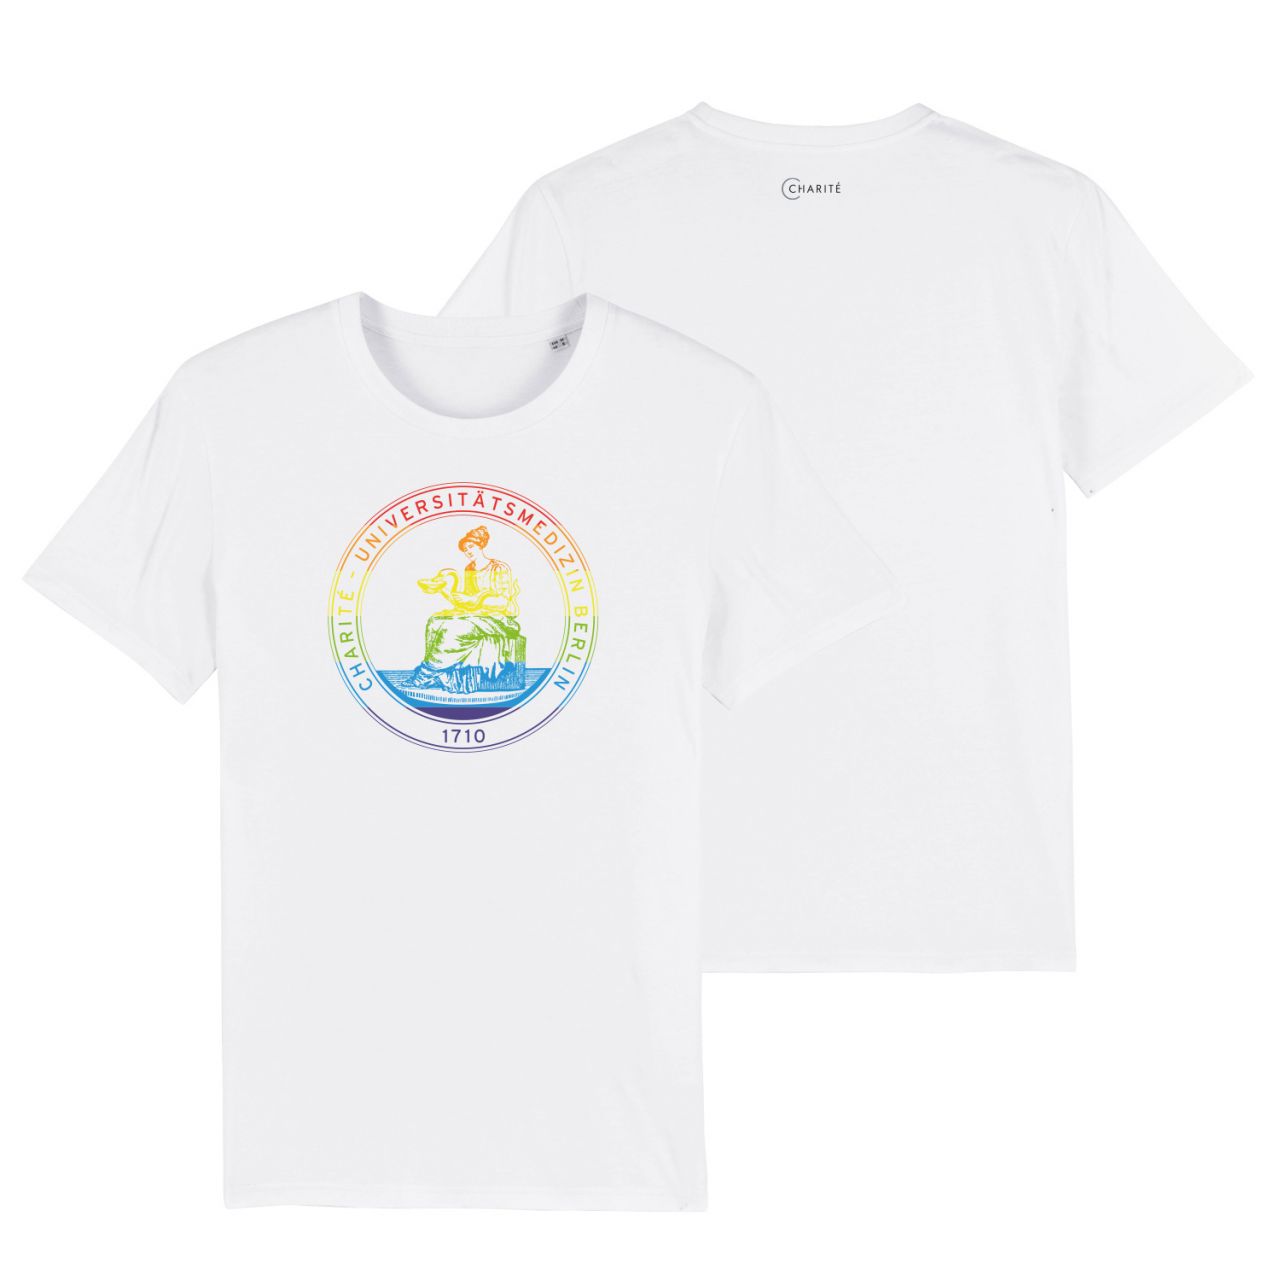 Unisex T-Shirt, white, Regenbogen